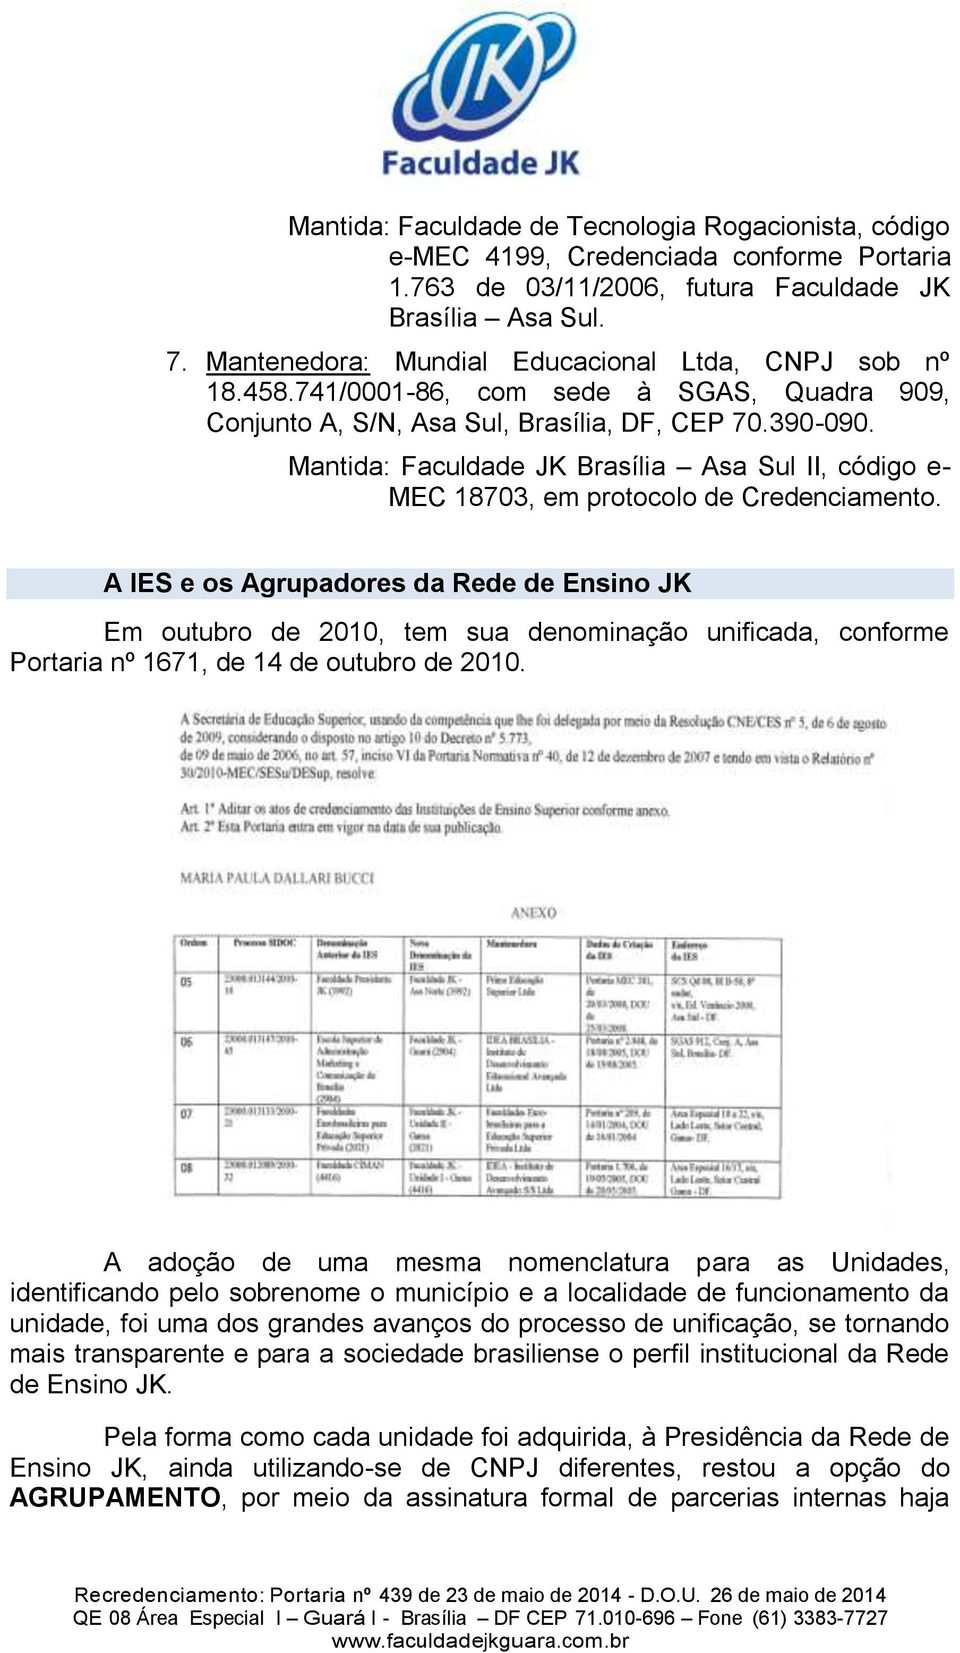 Mantida: Faculdade JK Brasília Asa Sul II, código e- MEC 18703, em protocolo de Credenciamento.